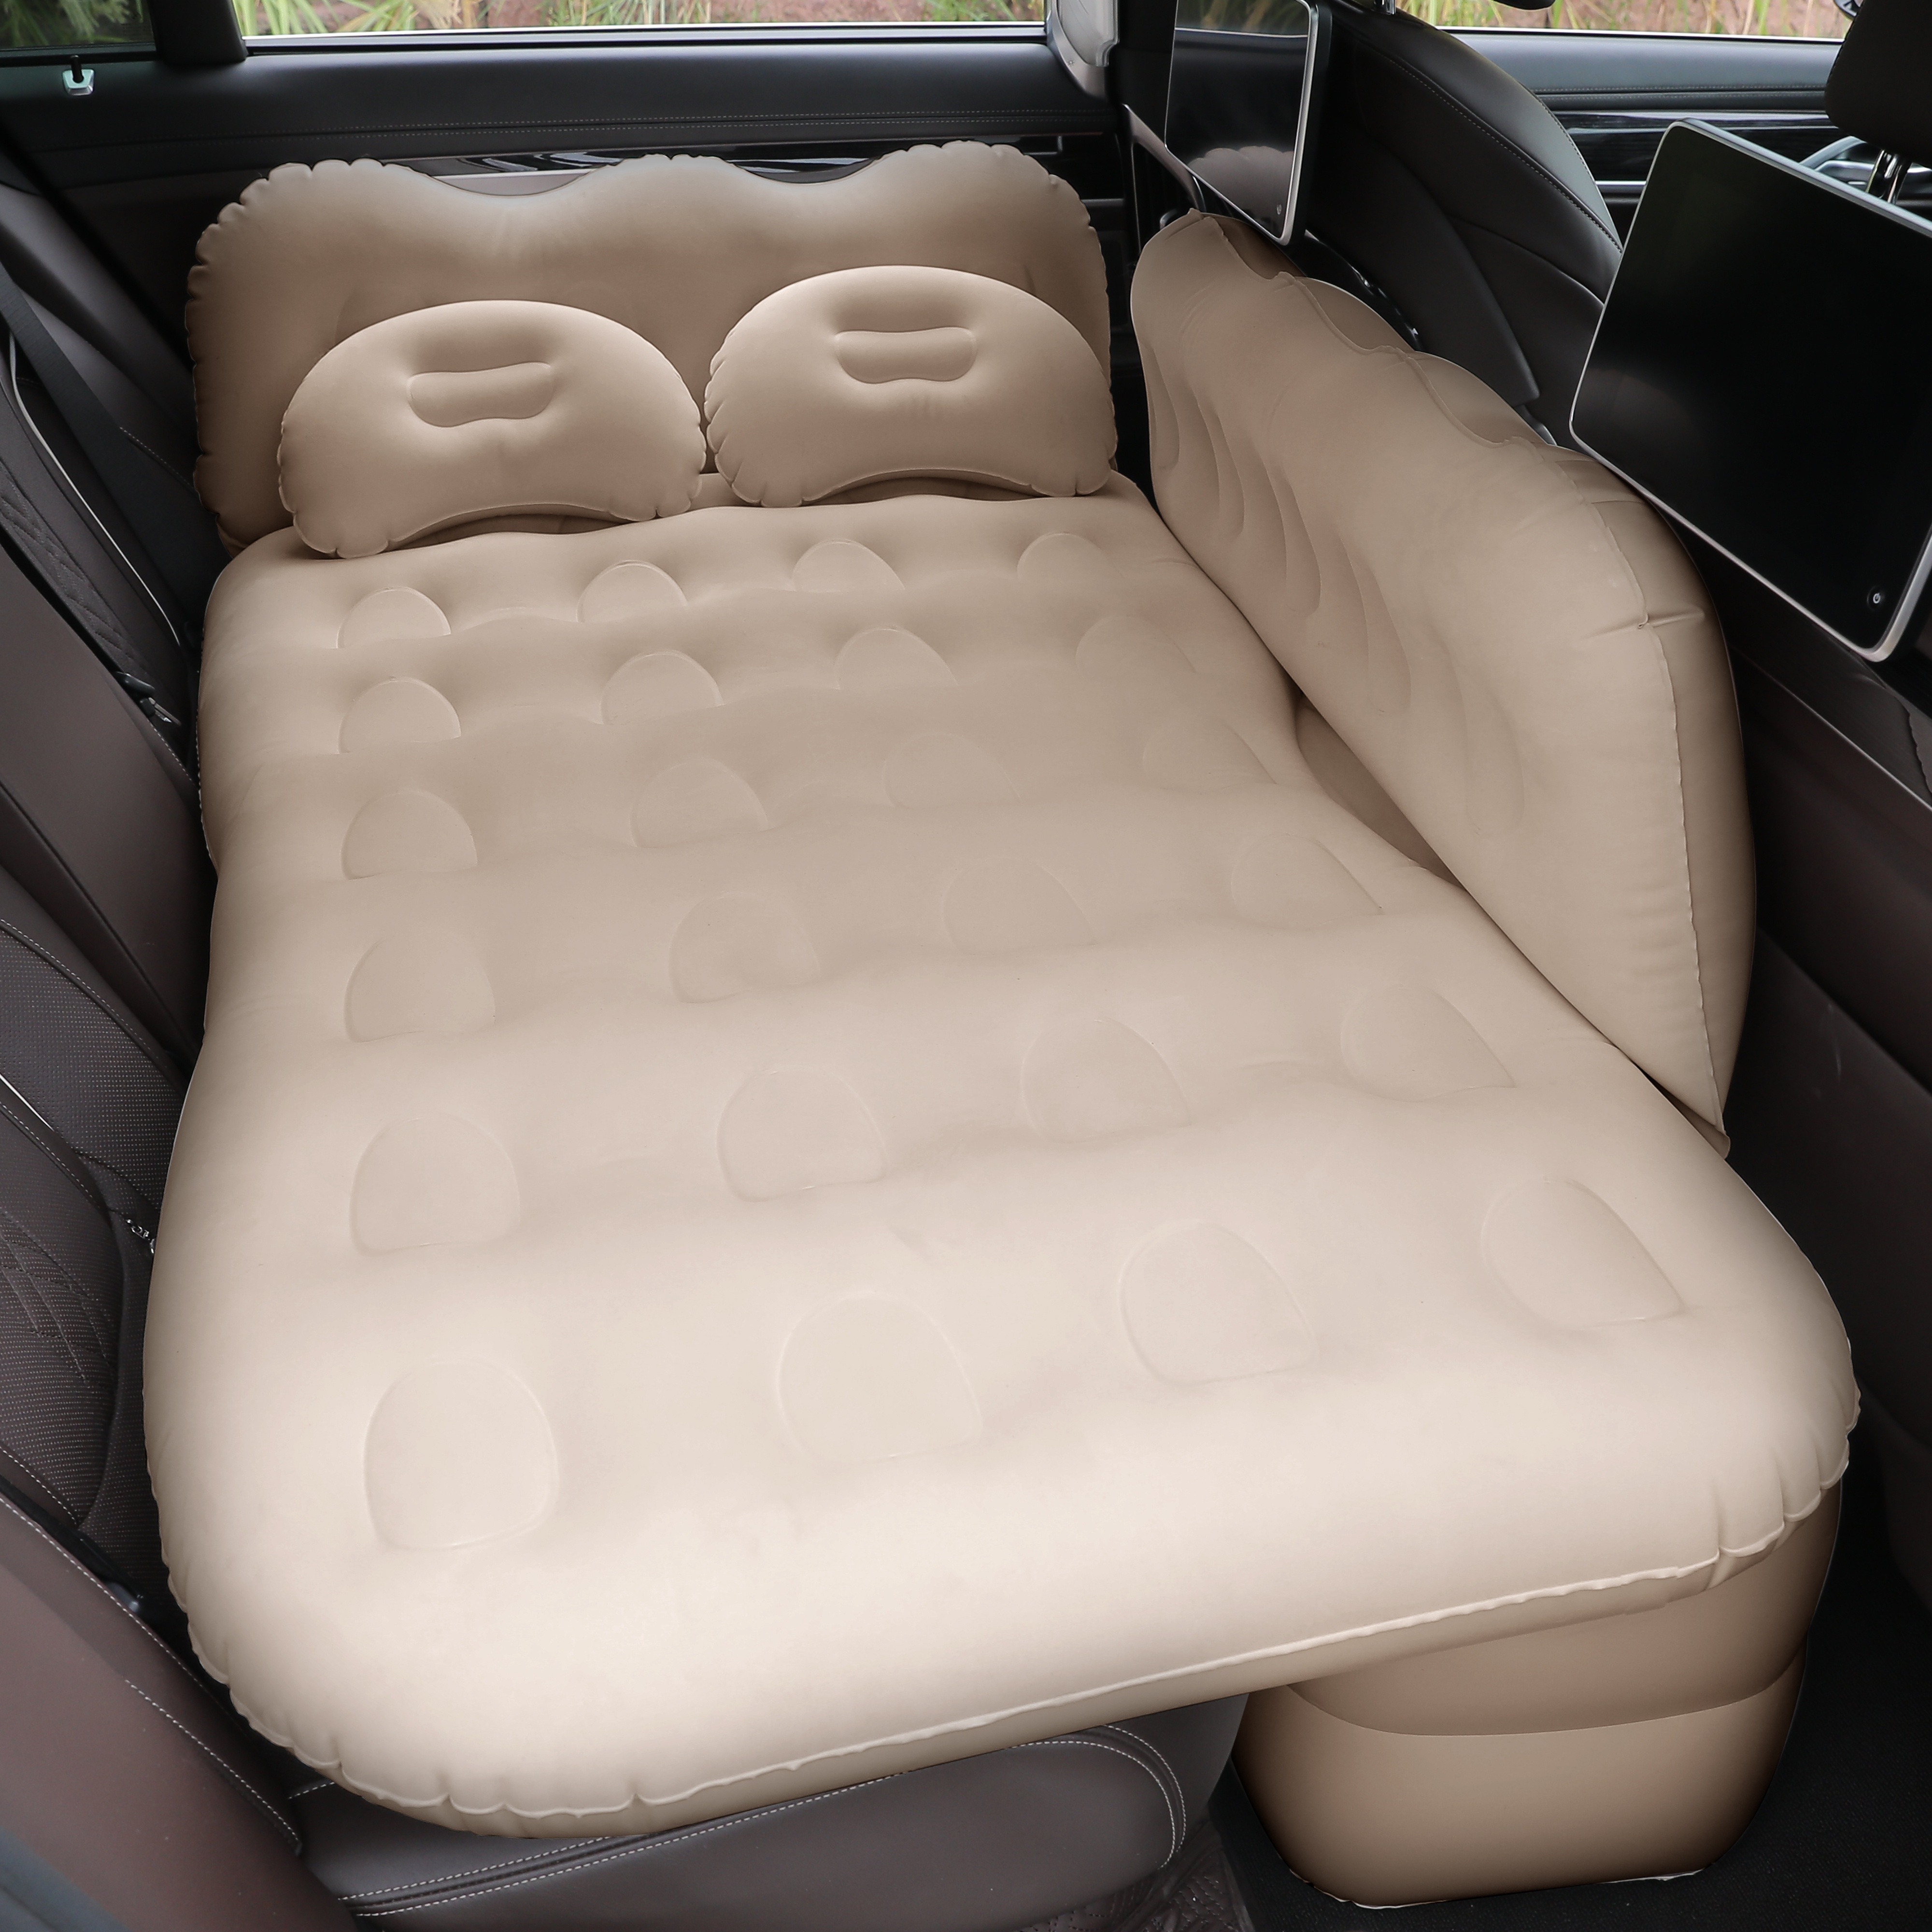 Lammyner Luftmatratze, aufblasbares Bett für SUV Auto, LKW, Auto